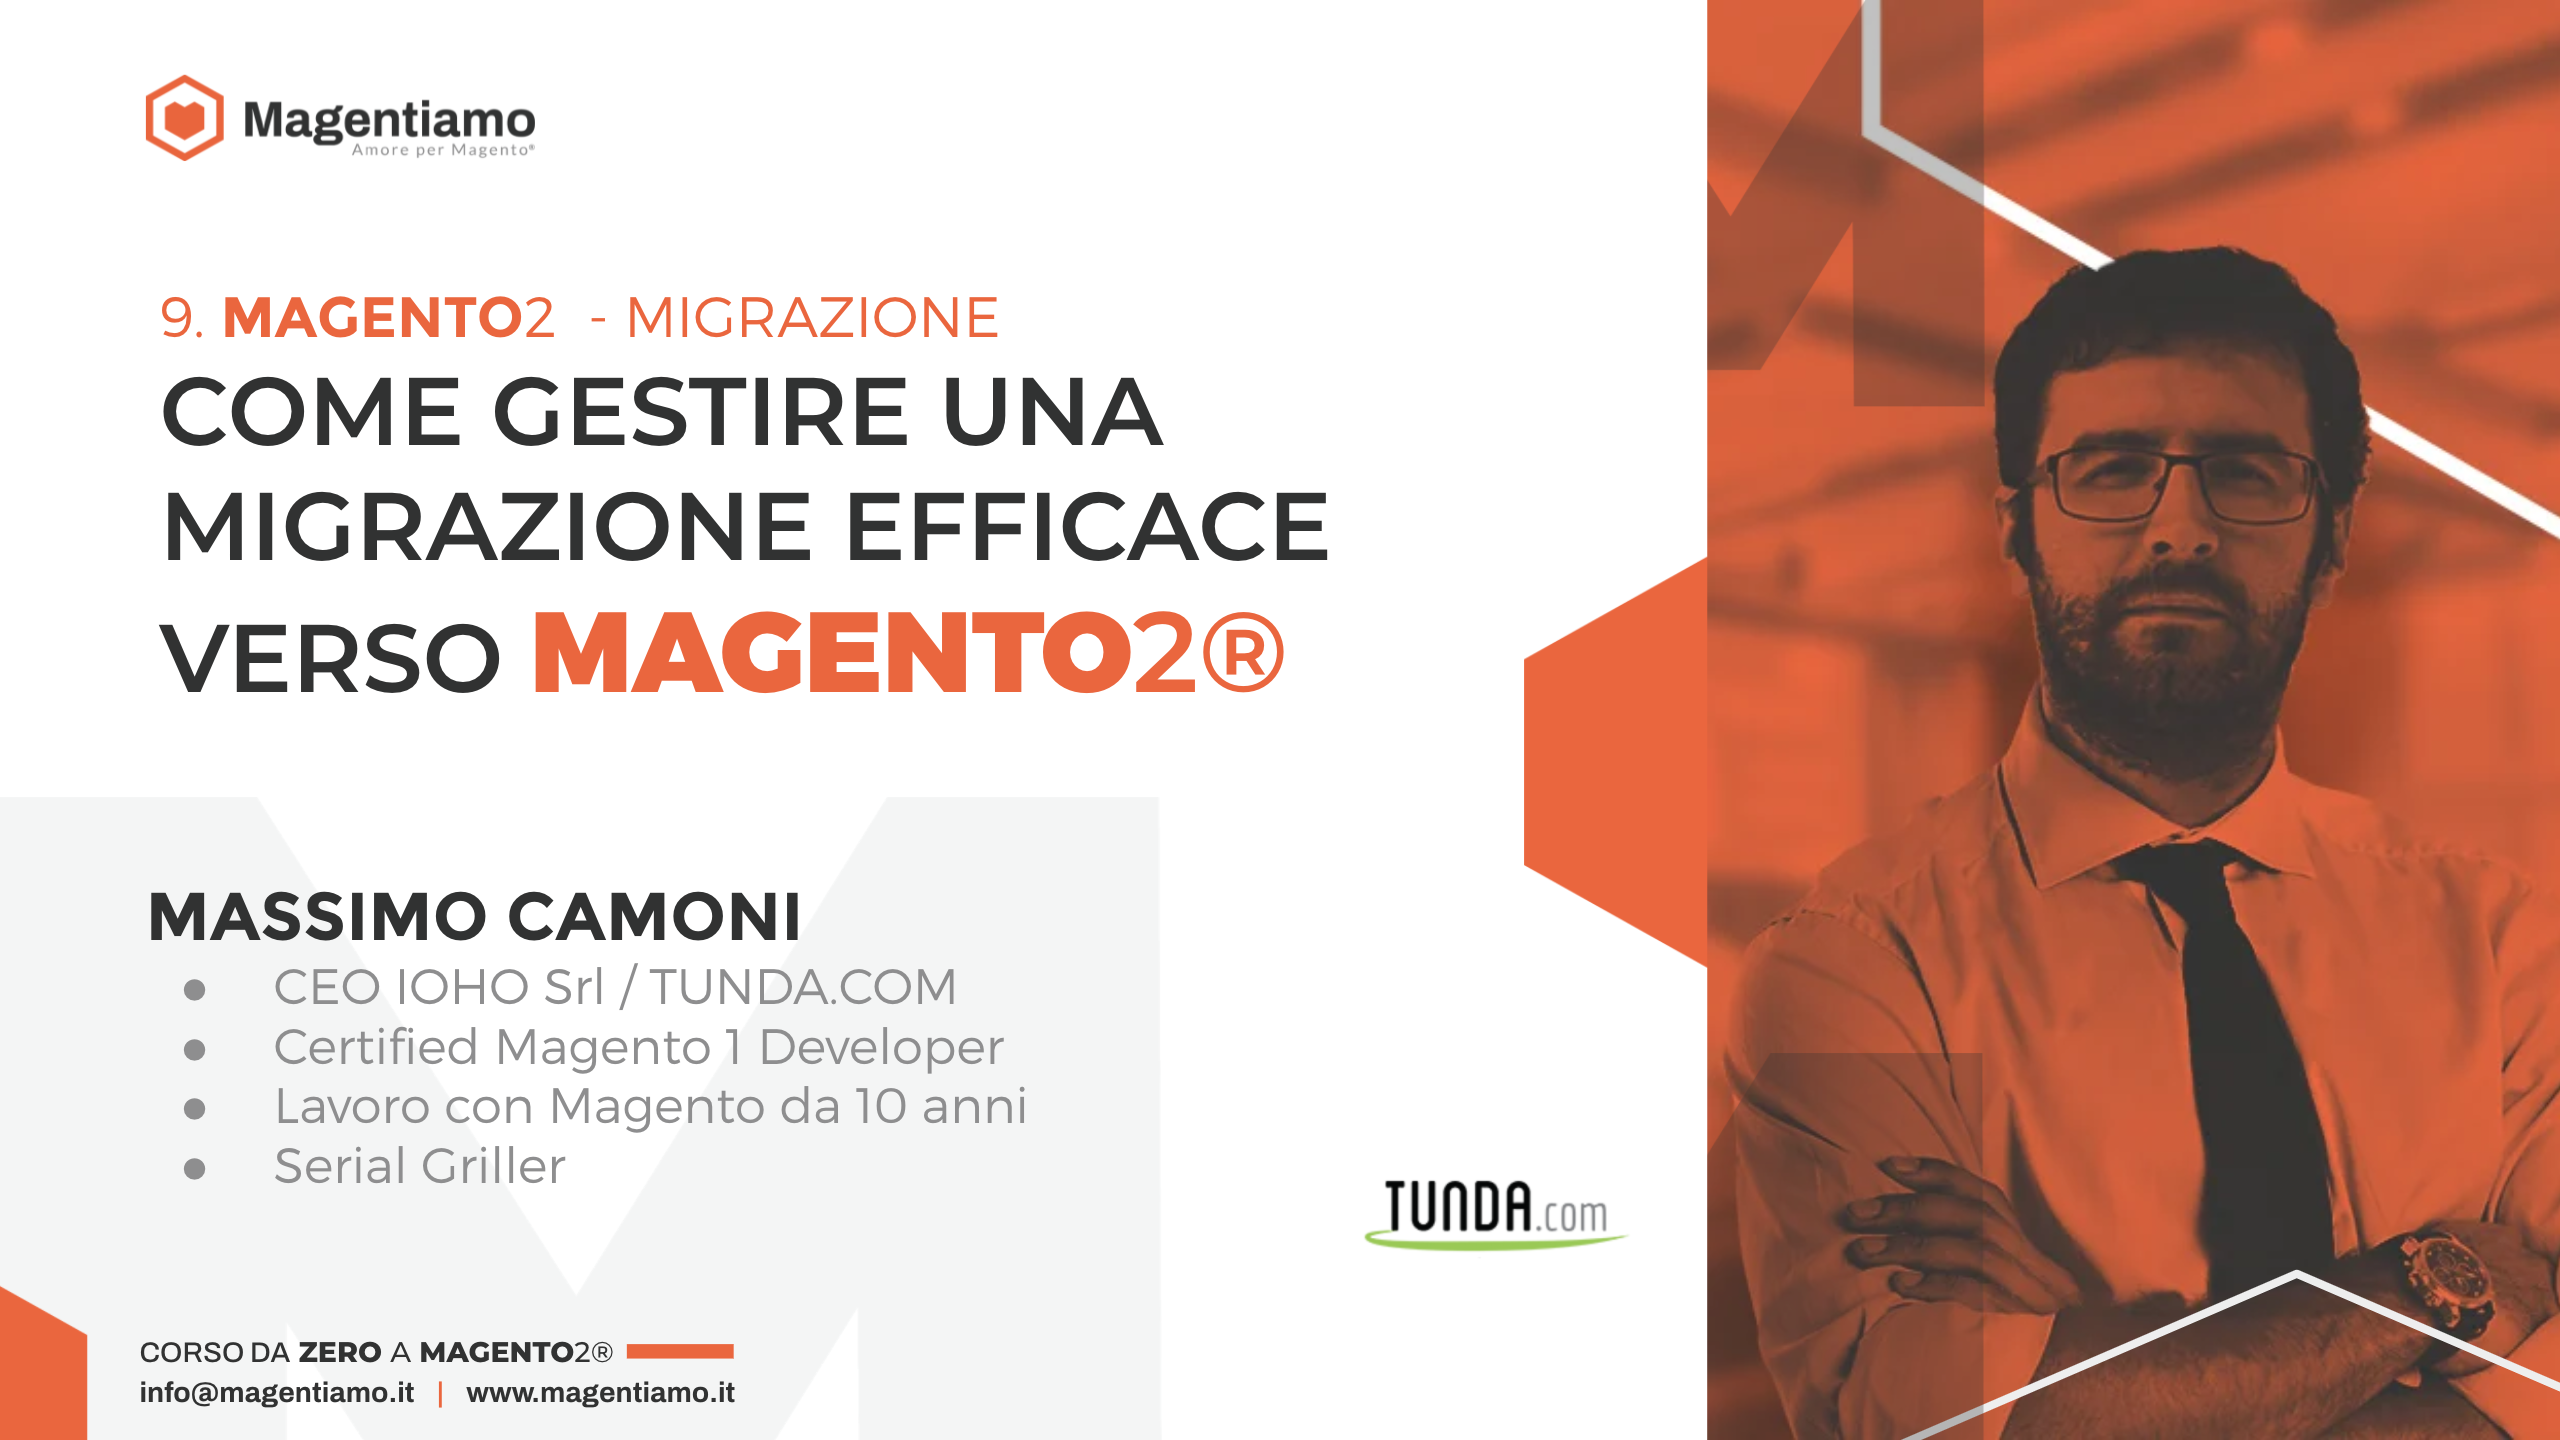 9. MIGRAZIONE - Come gestire una migrazione efficace verso Magento 2 - Massimo Camoni Tunda